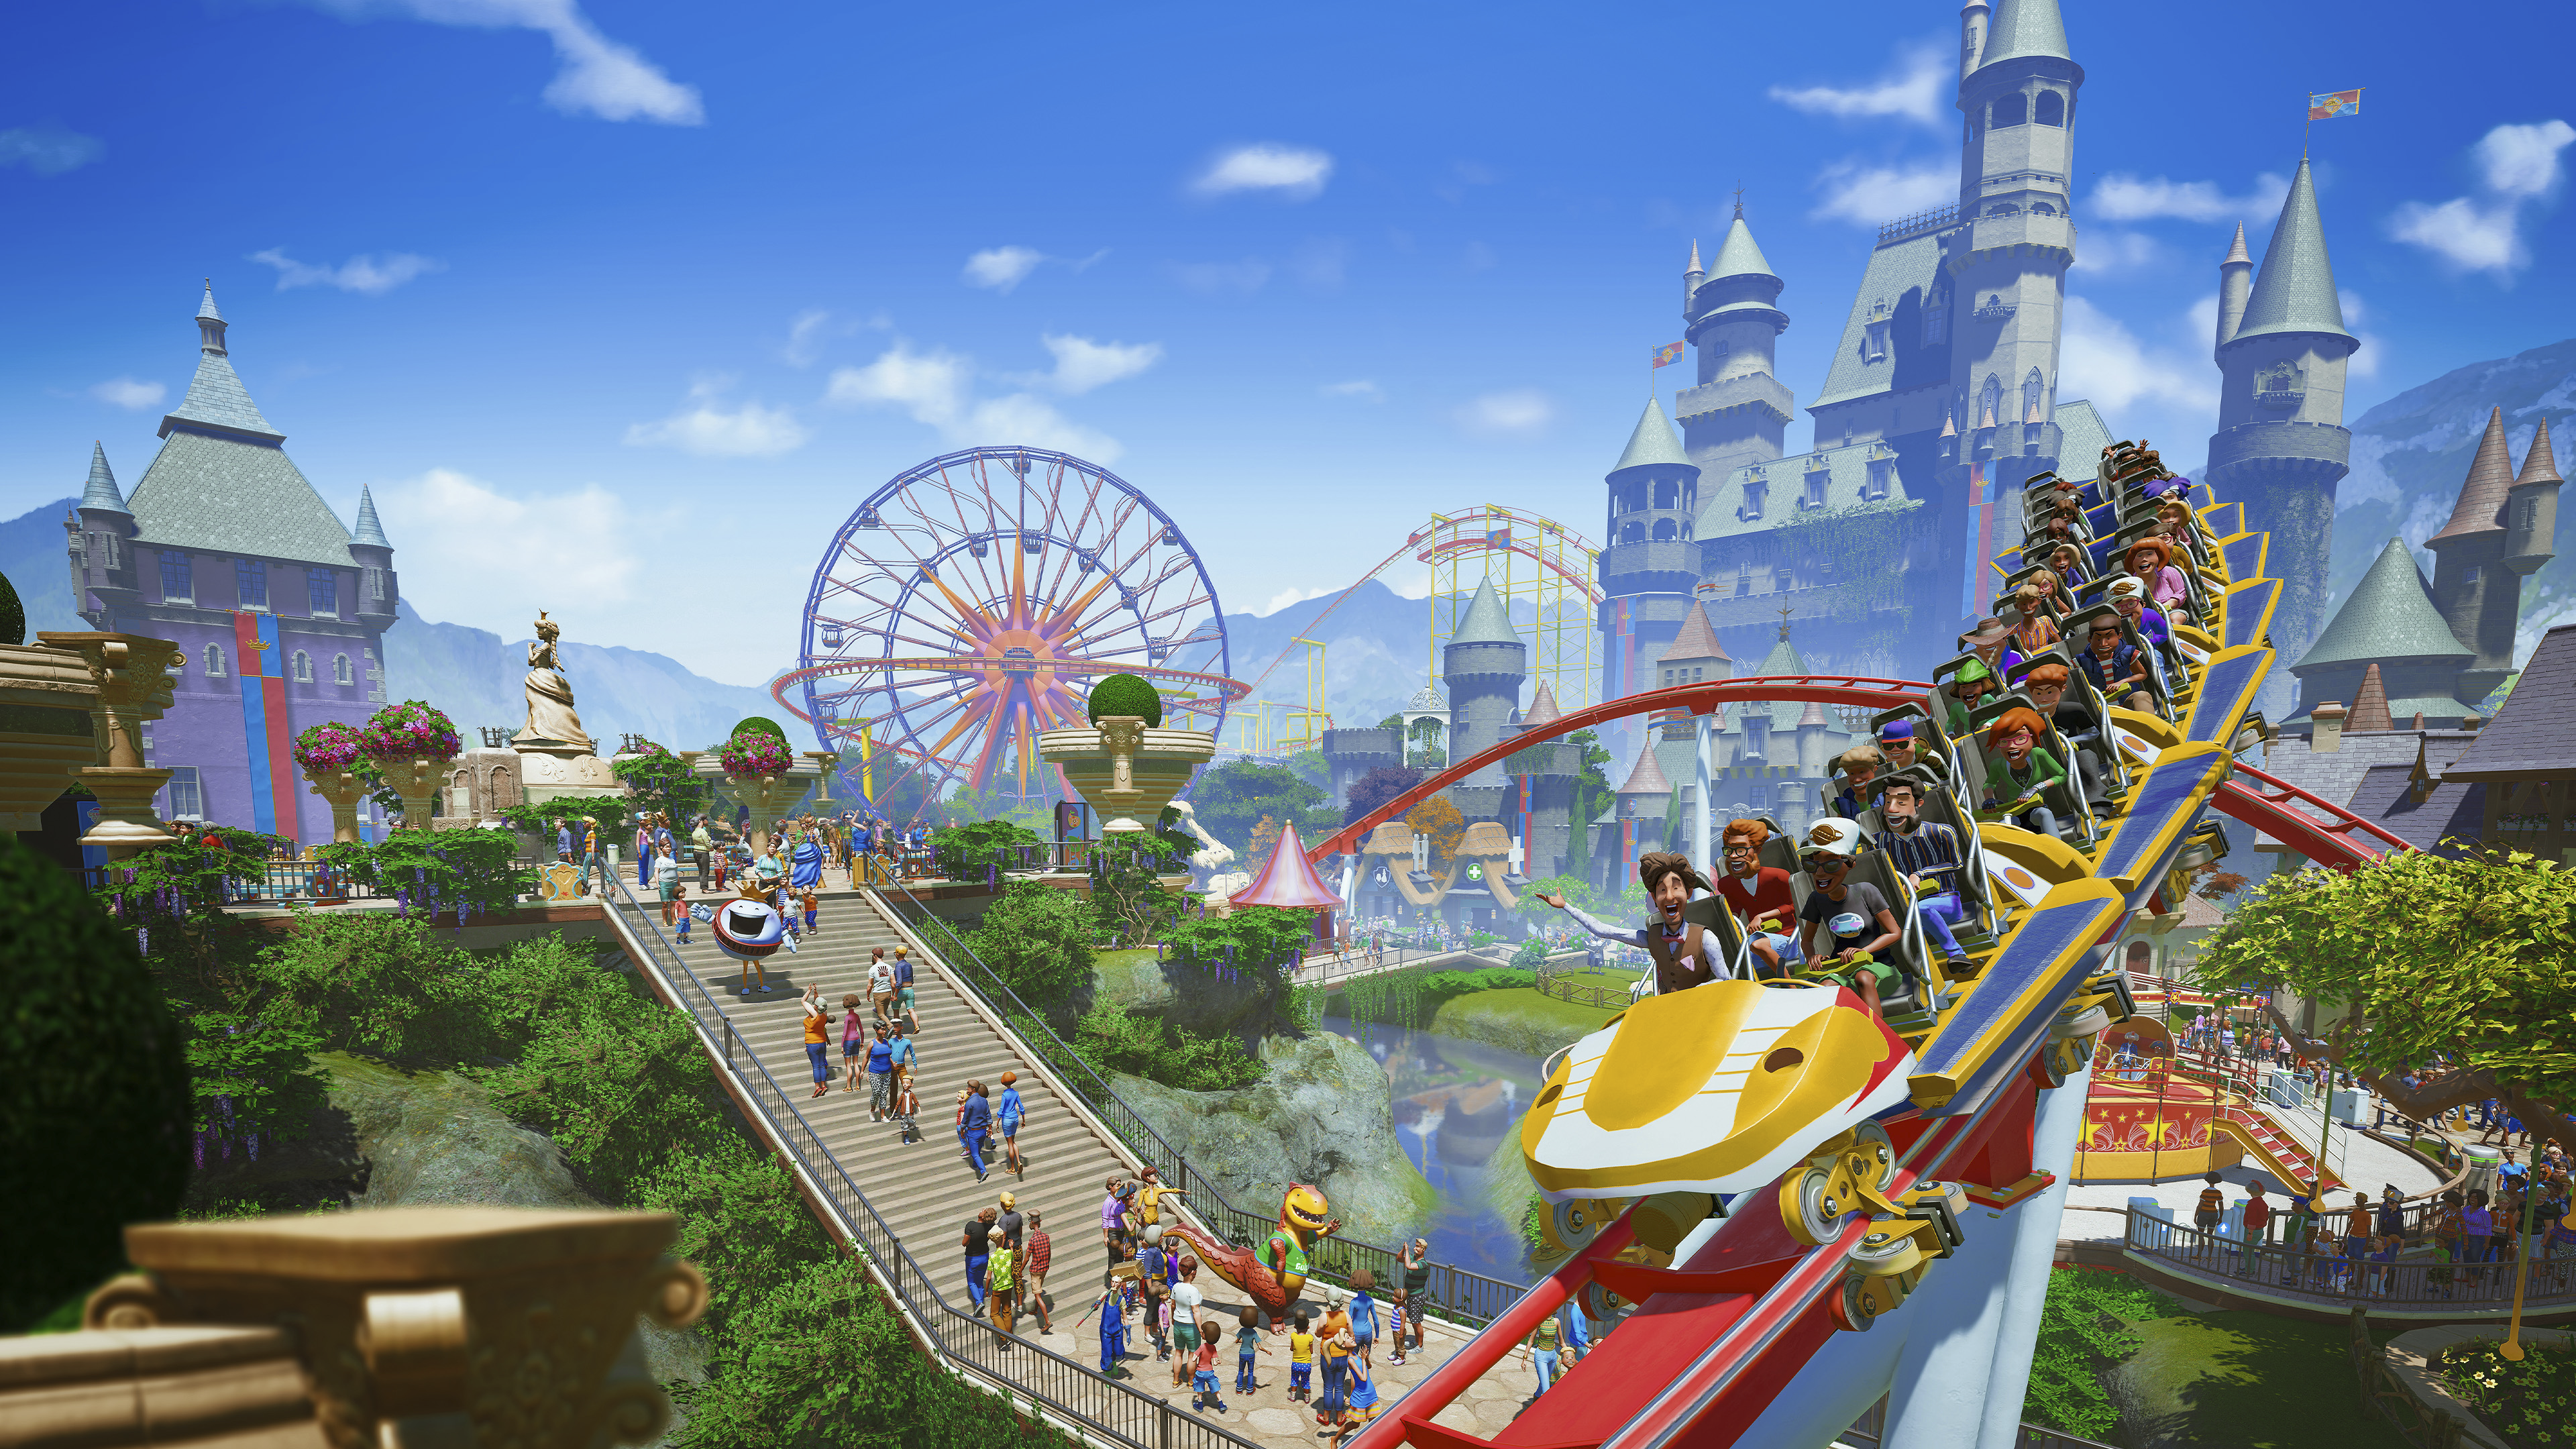 Glavna ilustracija iz igre Planet Coaster koja prikazuje snimku živahnog tematskog parka.